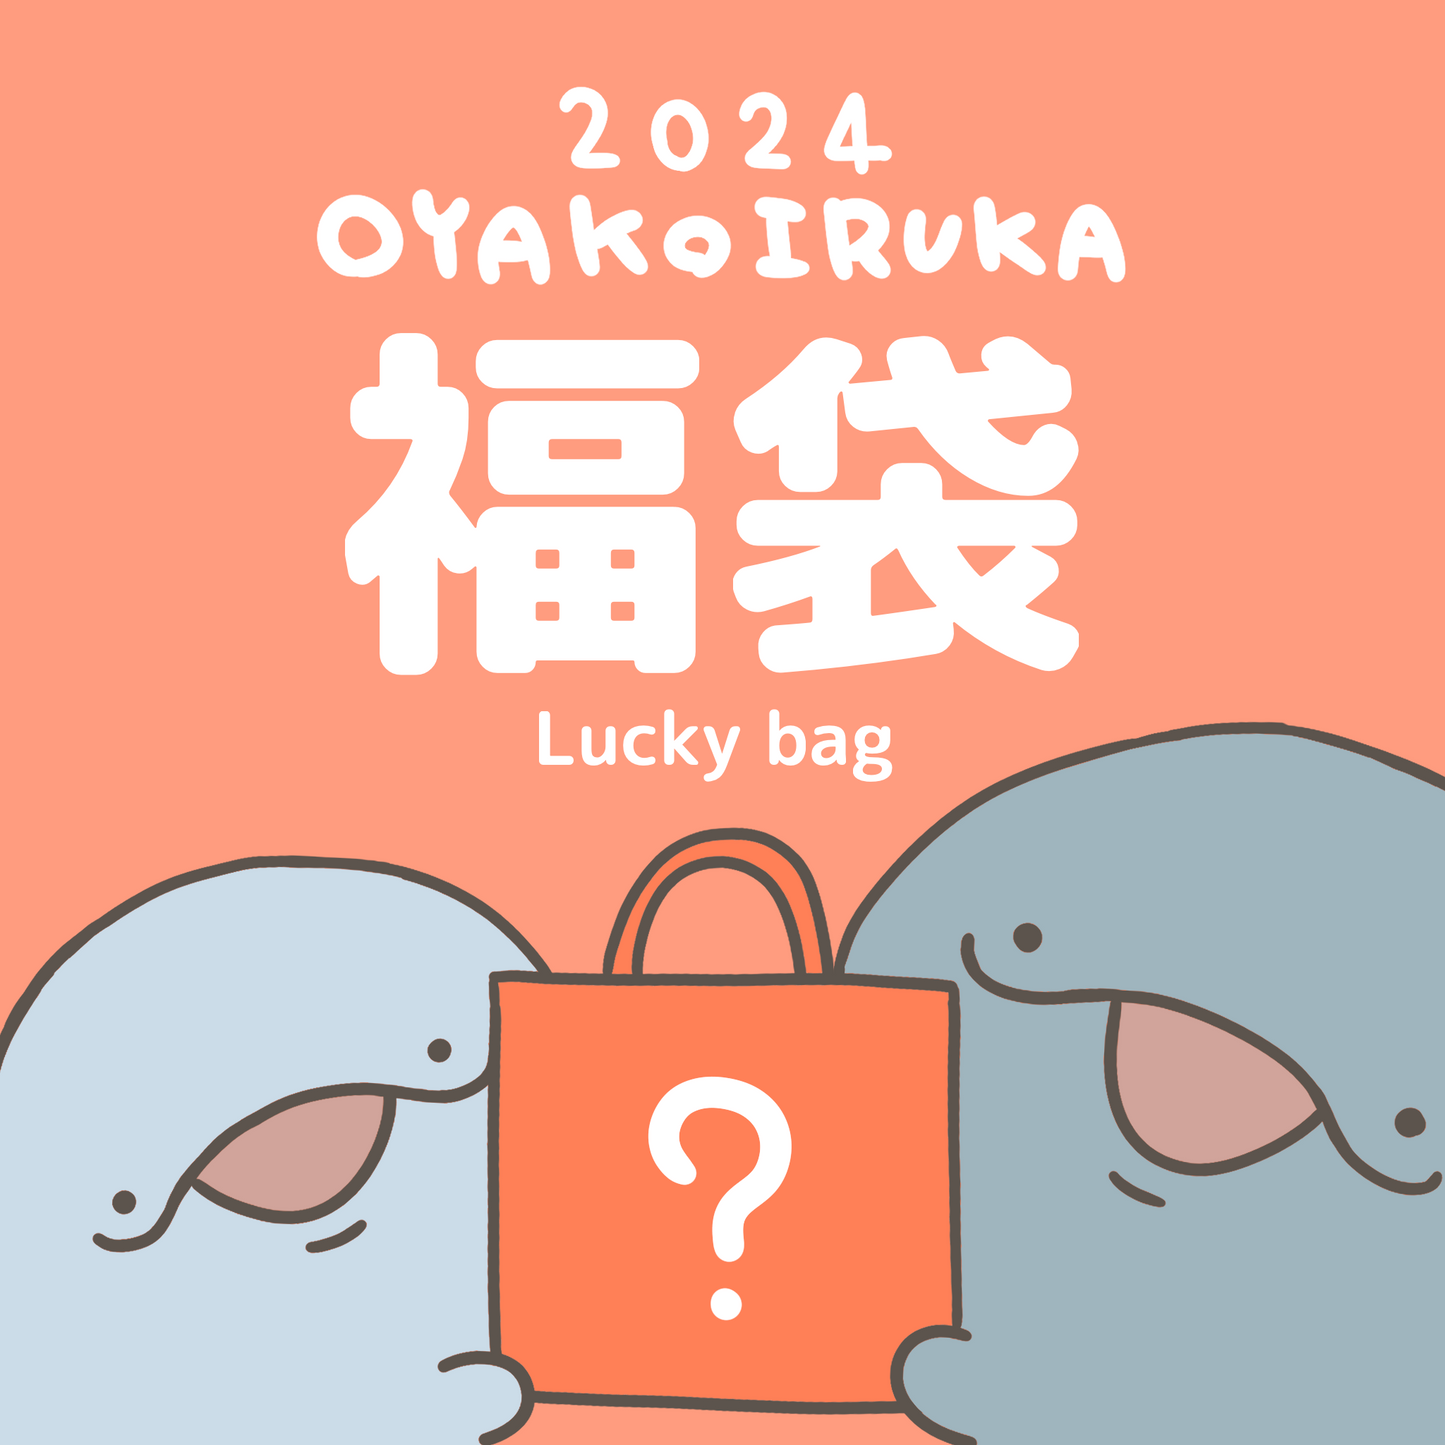 【親子イルカ】OYAKOIRUKA LUCKY BAG 2024【1月中旬発送】